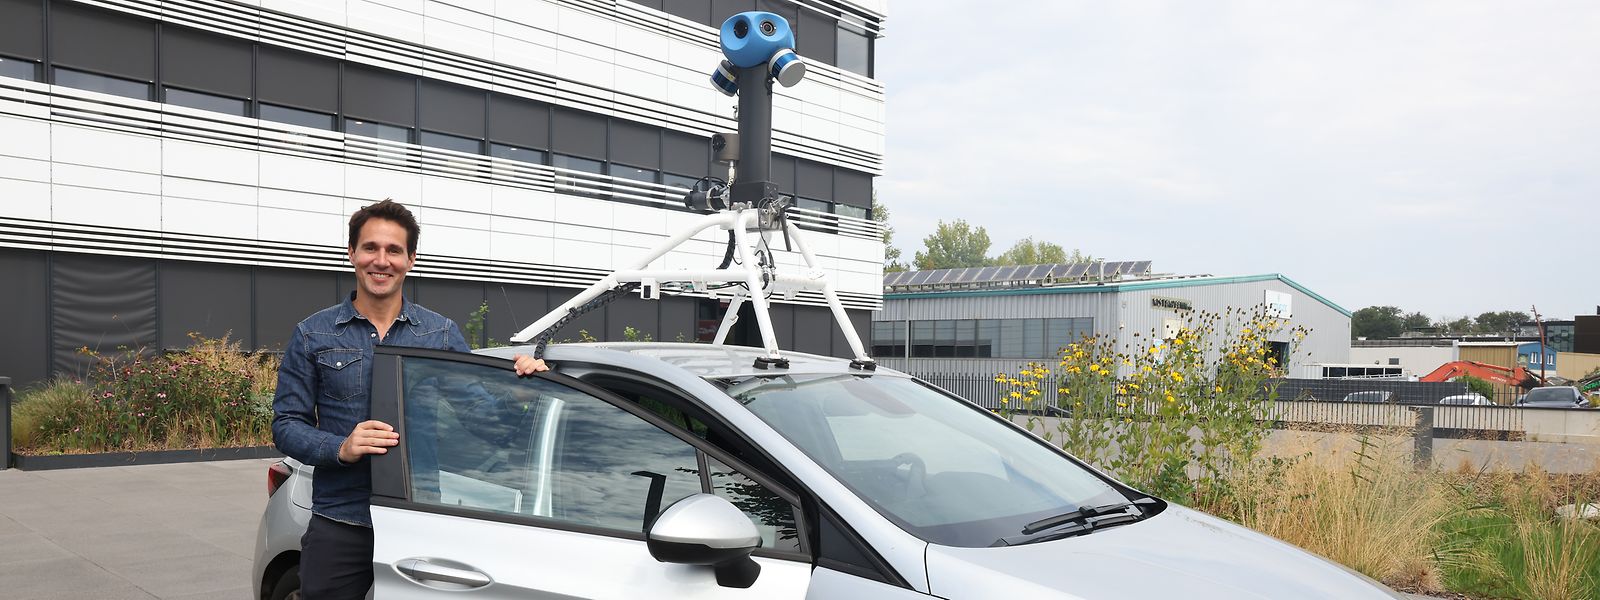 Michiel Sallaets, Leiter der Kommunikationsabteilung bei Google Belux, bei seinem Besuch in Luxemburg, wo derzeit Fahrzeuge von Google Street View neue Aufnahmen machen. 